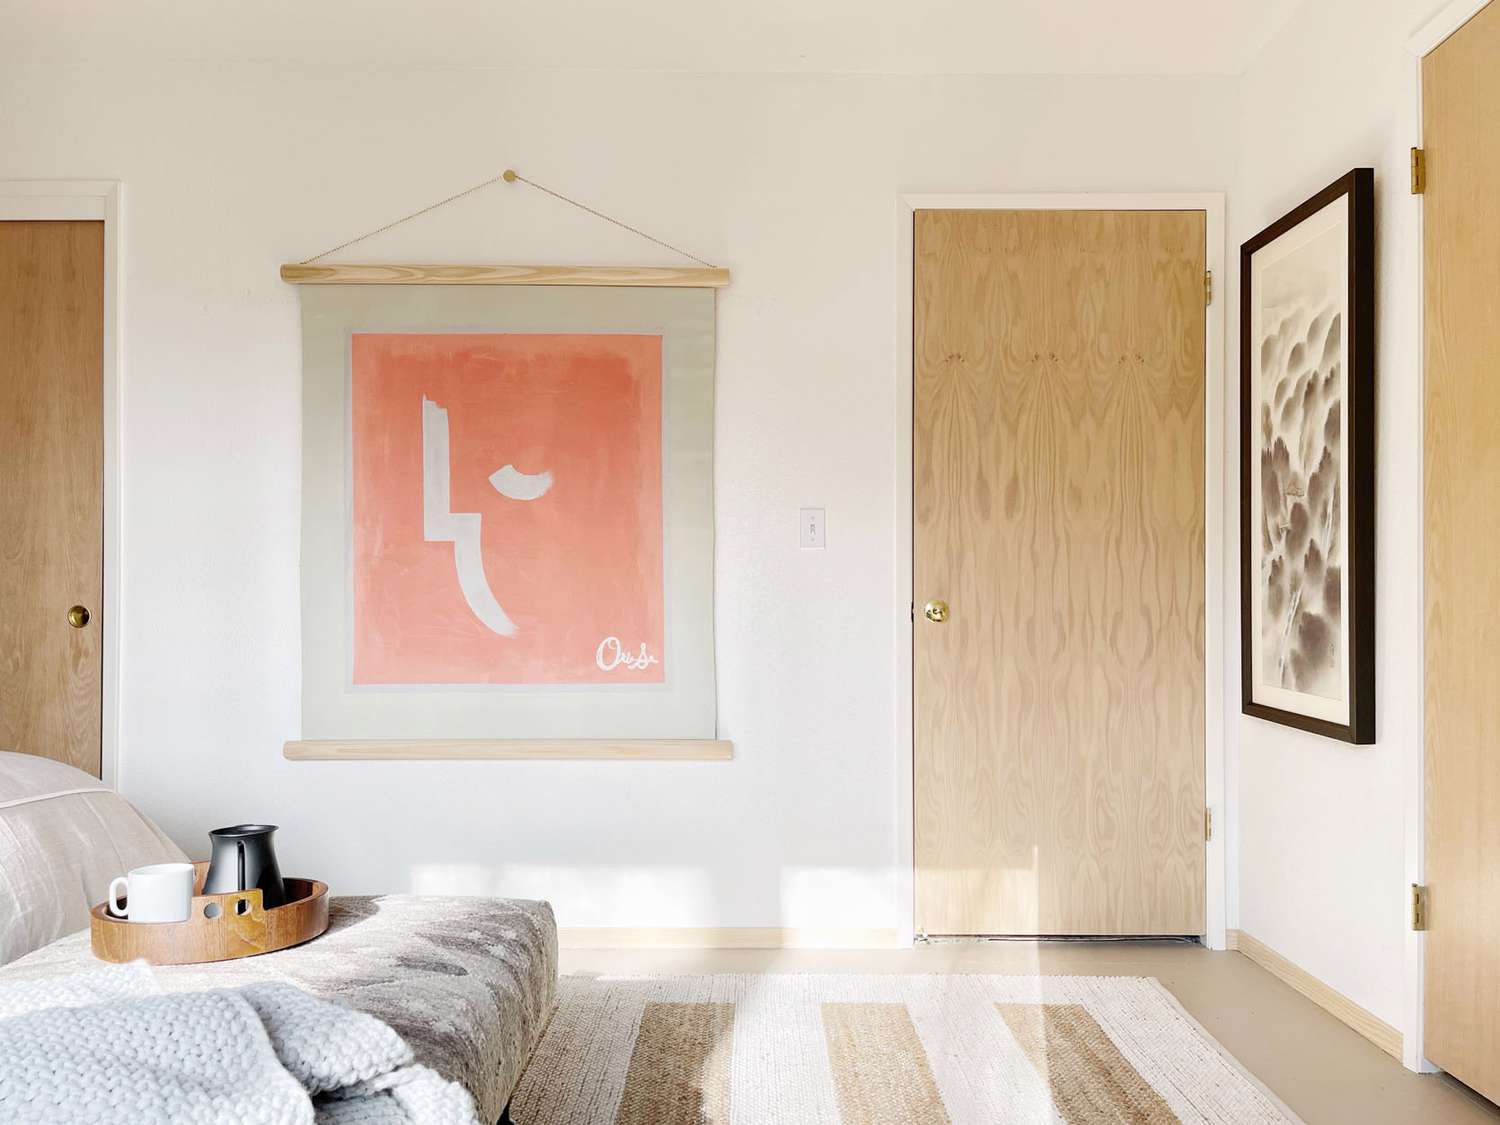 Puertas de madera clara complementan un tapiz melocotón que cubre un dormitorio de color crema claro